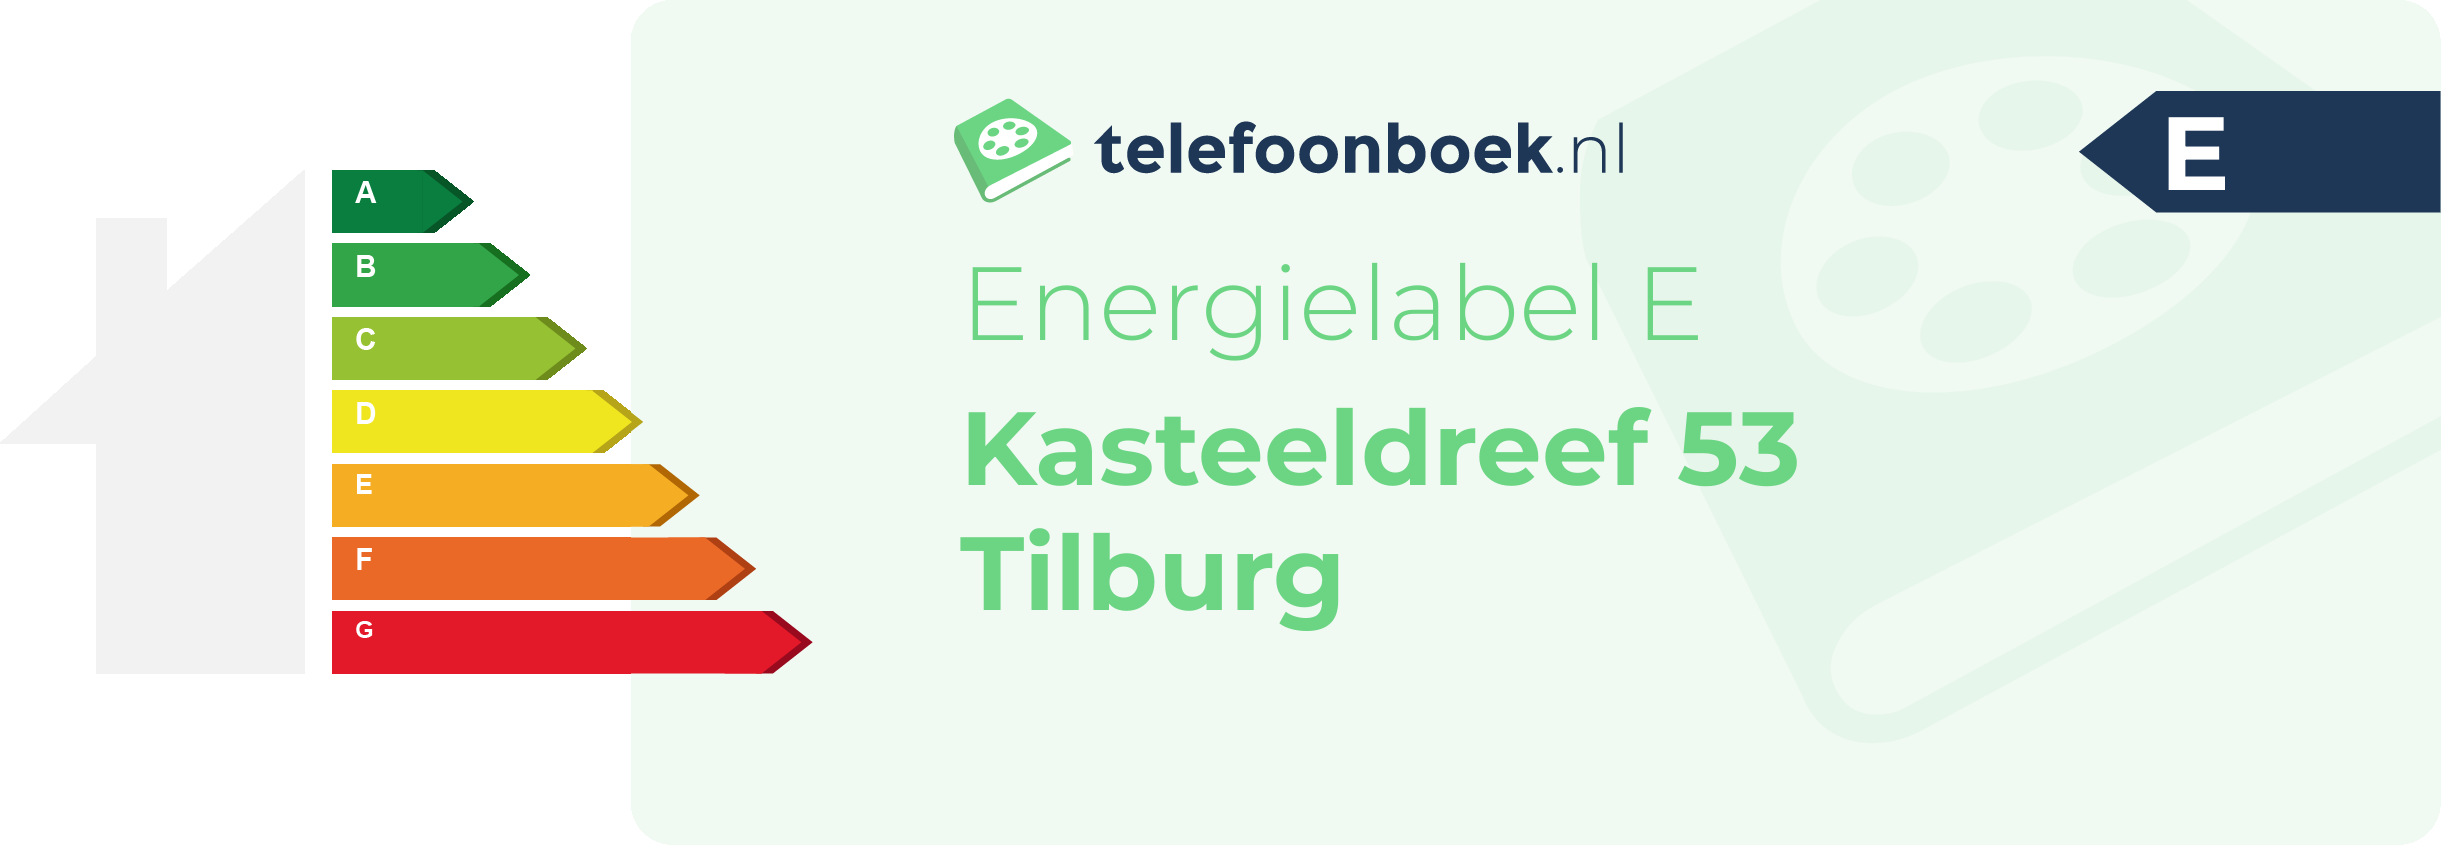 Energielabel Kasteeldreef 53 Tilburg